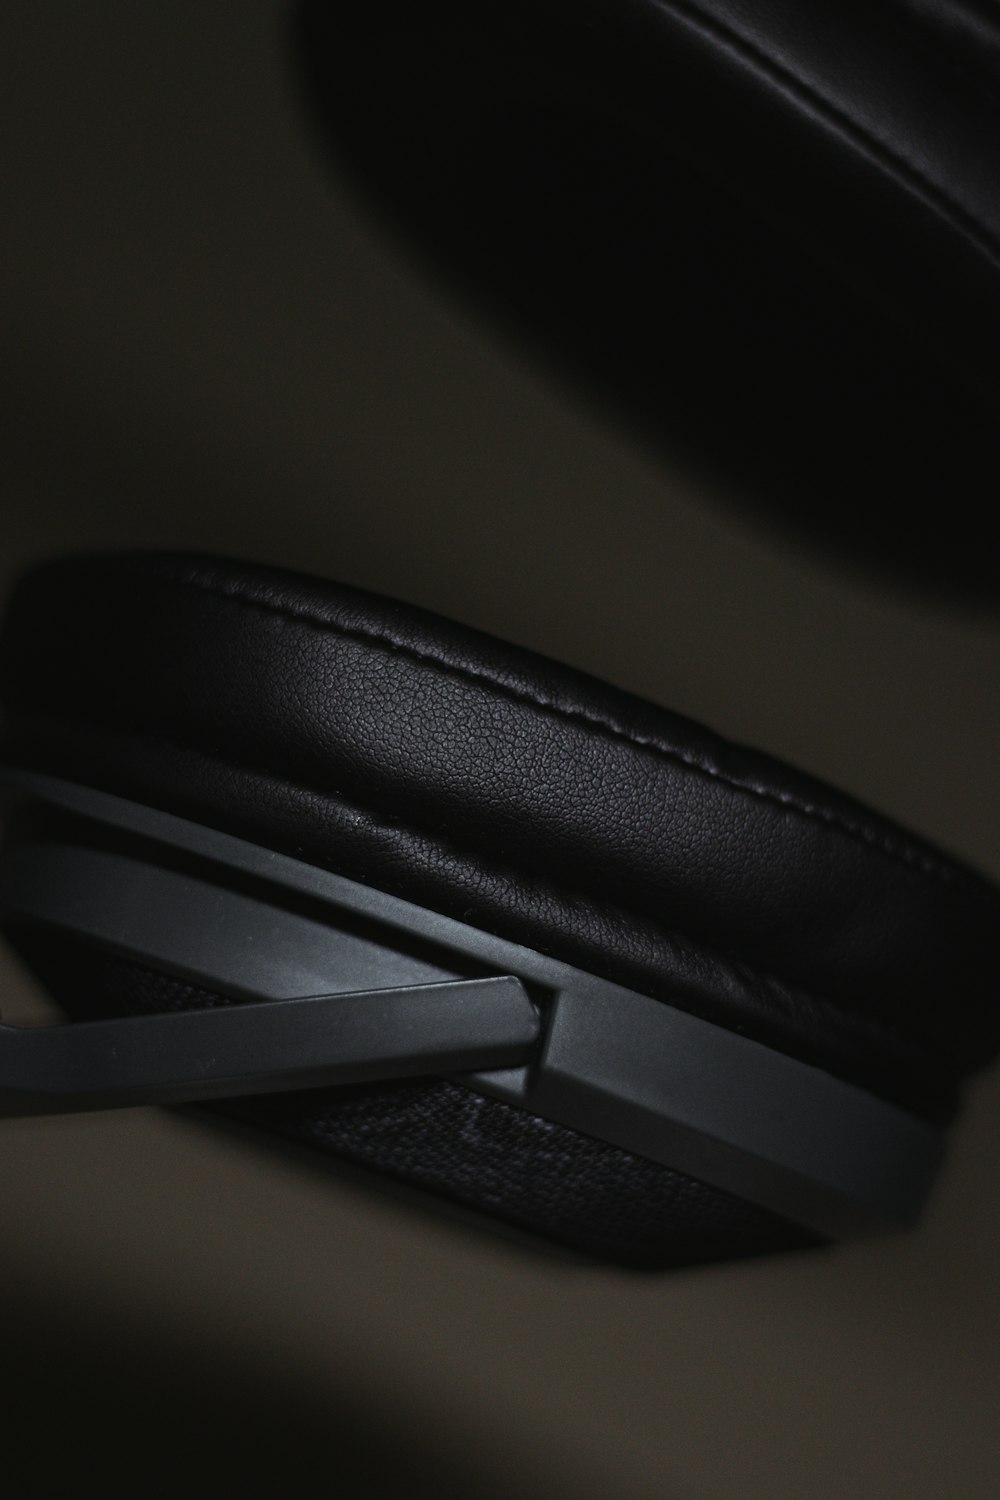 a close up of a black stapler